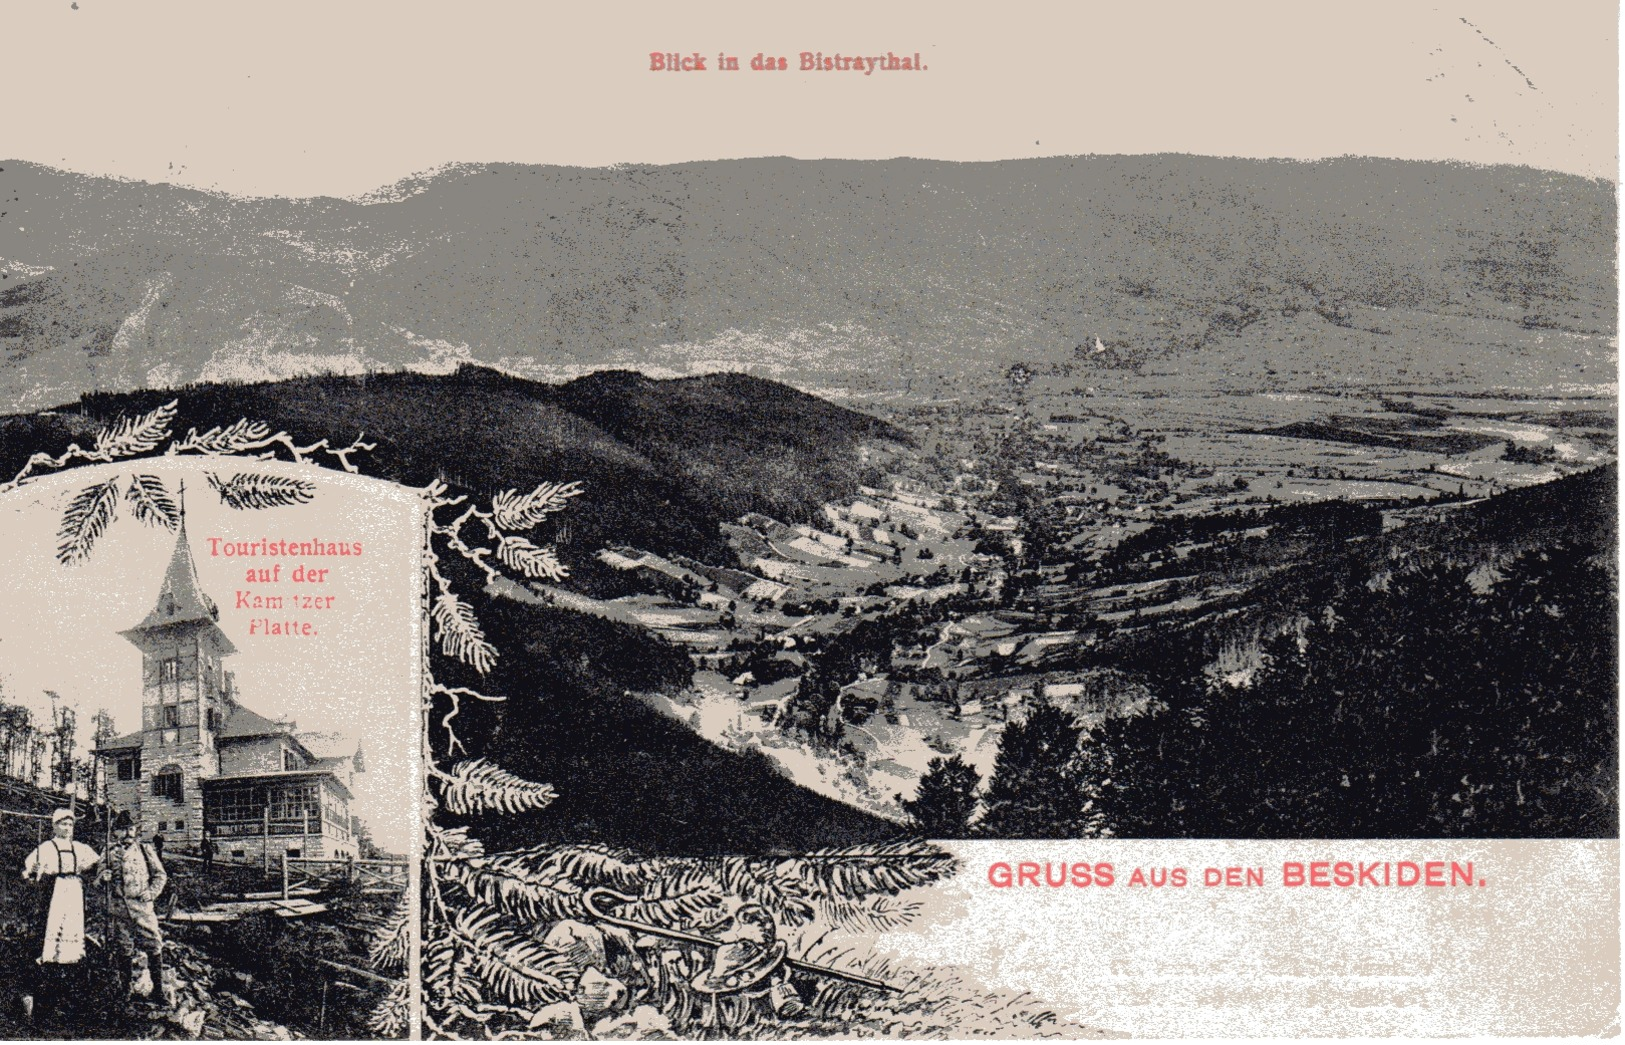 BESKIDEN -Schlesien, Blick In Das Bistraythal, Touristenhaus Auf Der Kemnitzer-Platte, Bielitz, Bielsko Biala, 15.8.1907 - Polonia